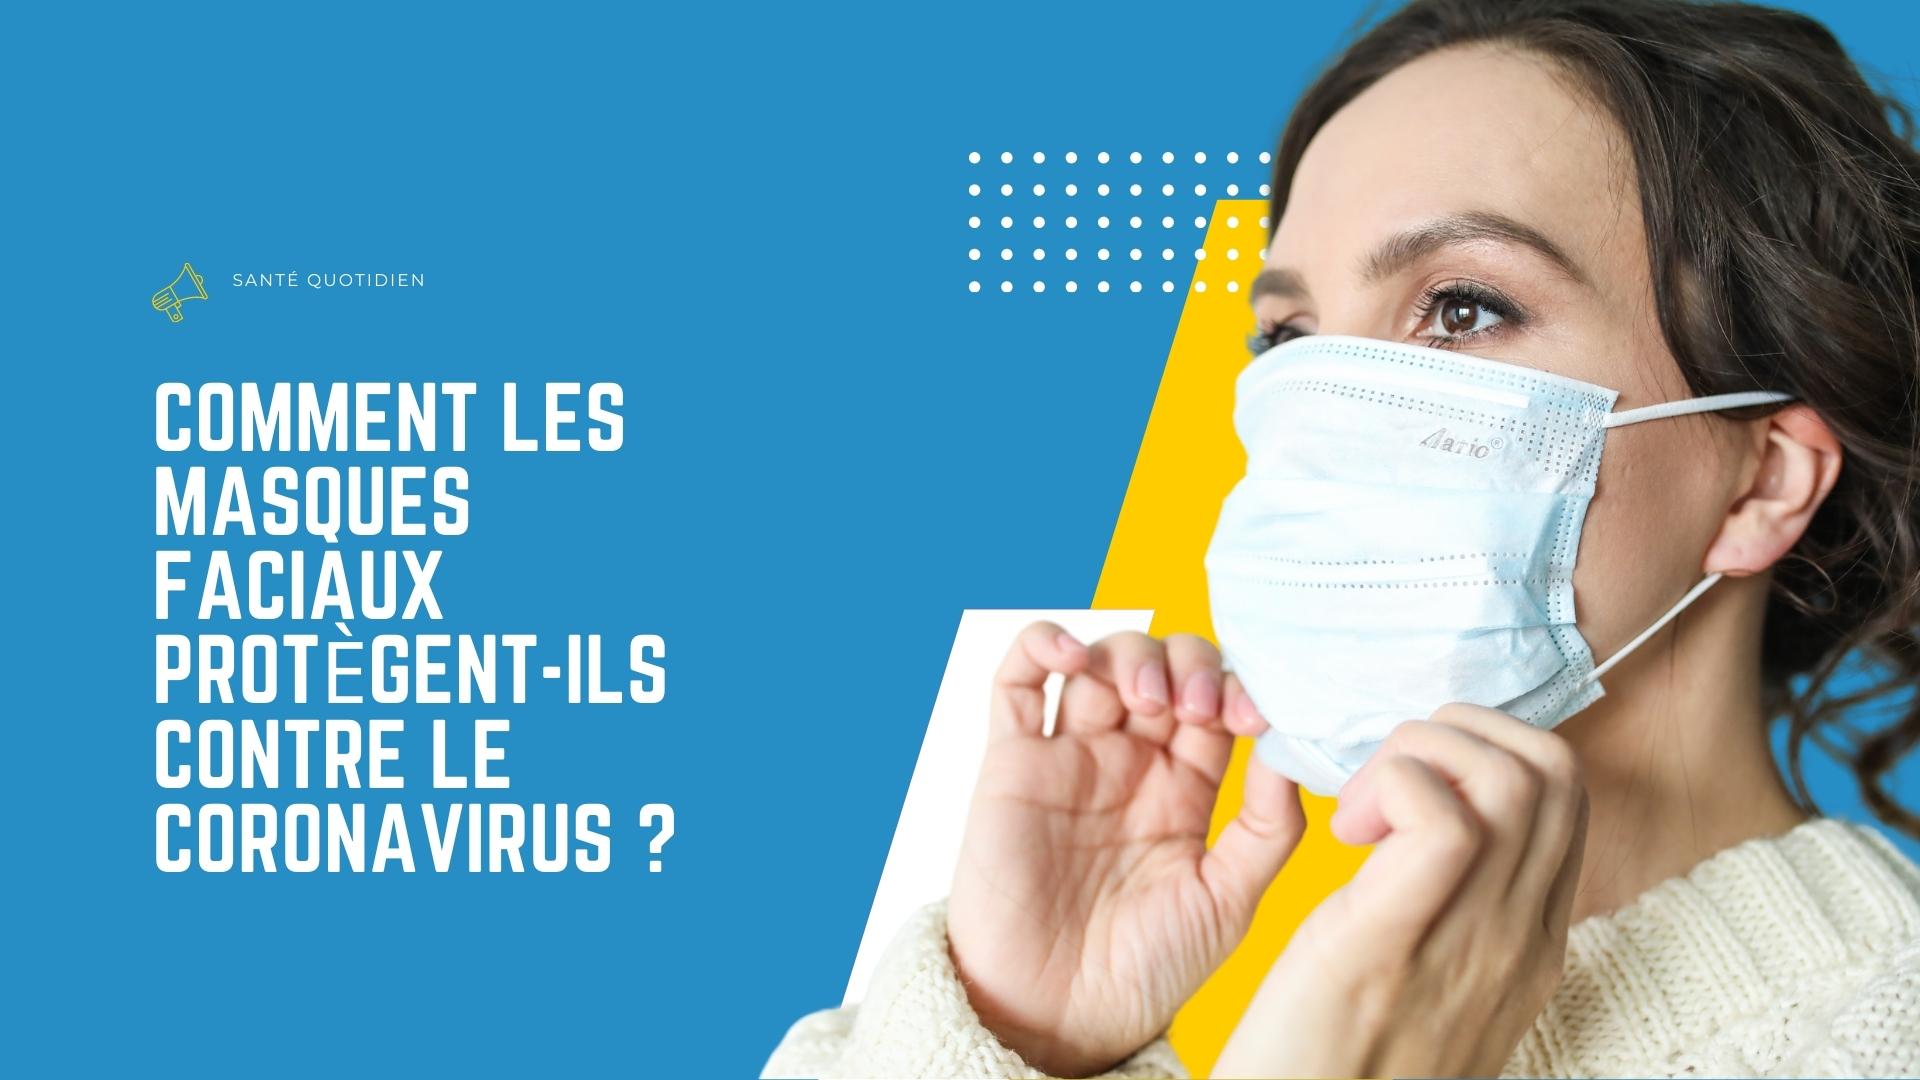 Comment les masques faciaux protègent-ils contre le coronavirus ?